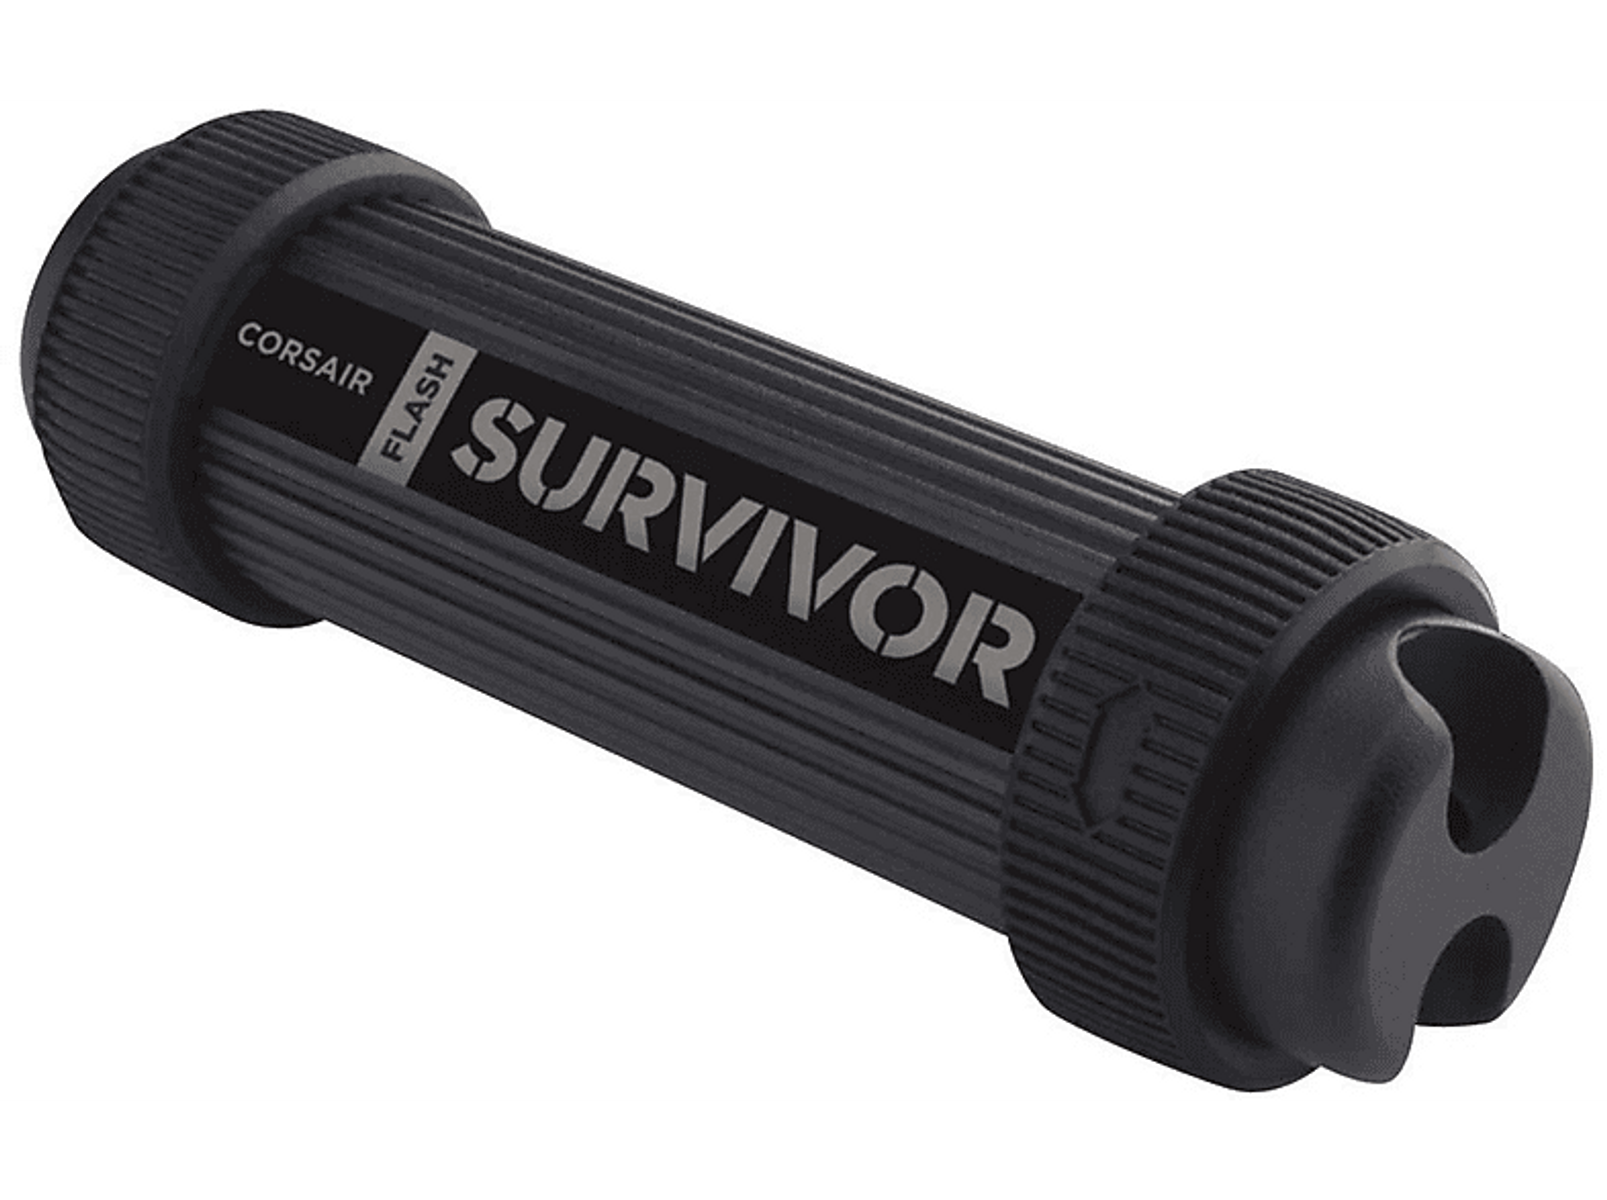 CORSAIR Survivor Stealth USB-Flash-Laufwerk (Schwarz, 1 TB)